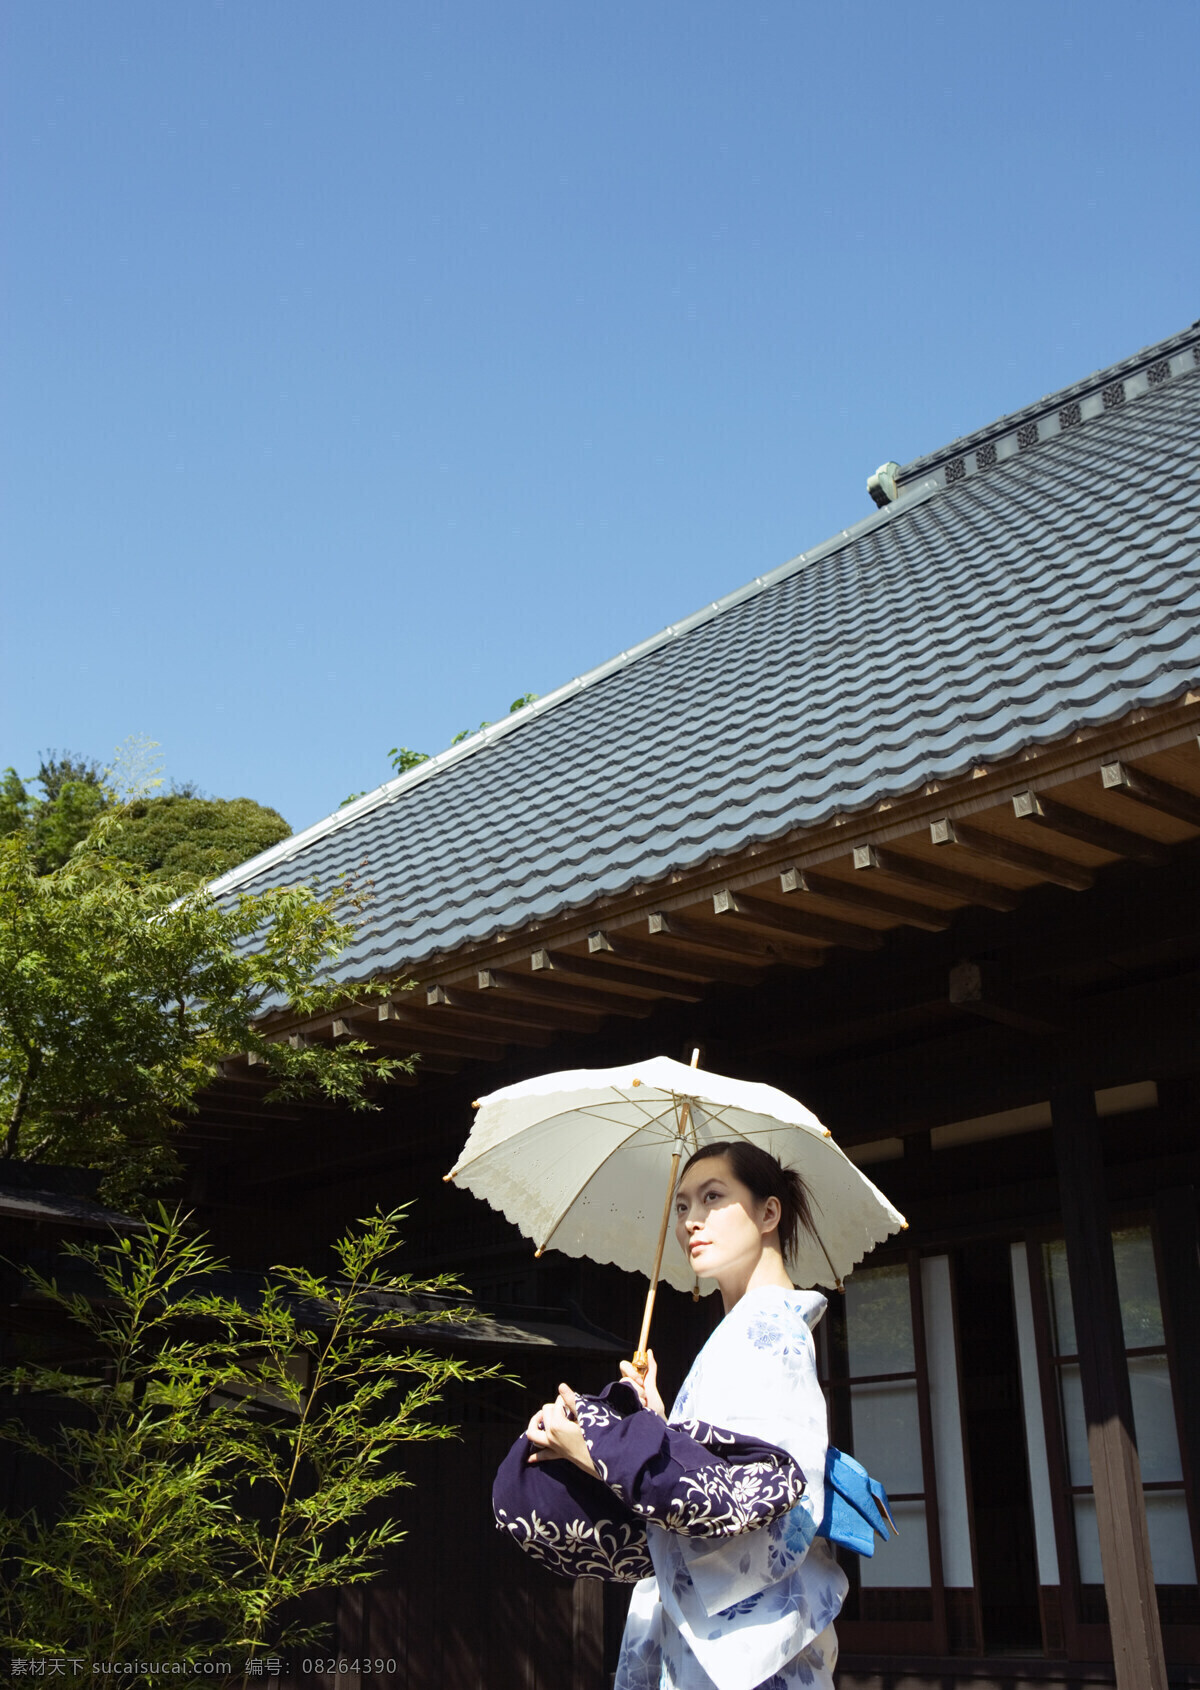 打伞 日本美女 日本夏天 女性 性感美女 日本文化 太阳伞 和服 模特 美女写真 摄影图 高清图片 美女图片 人物图片